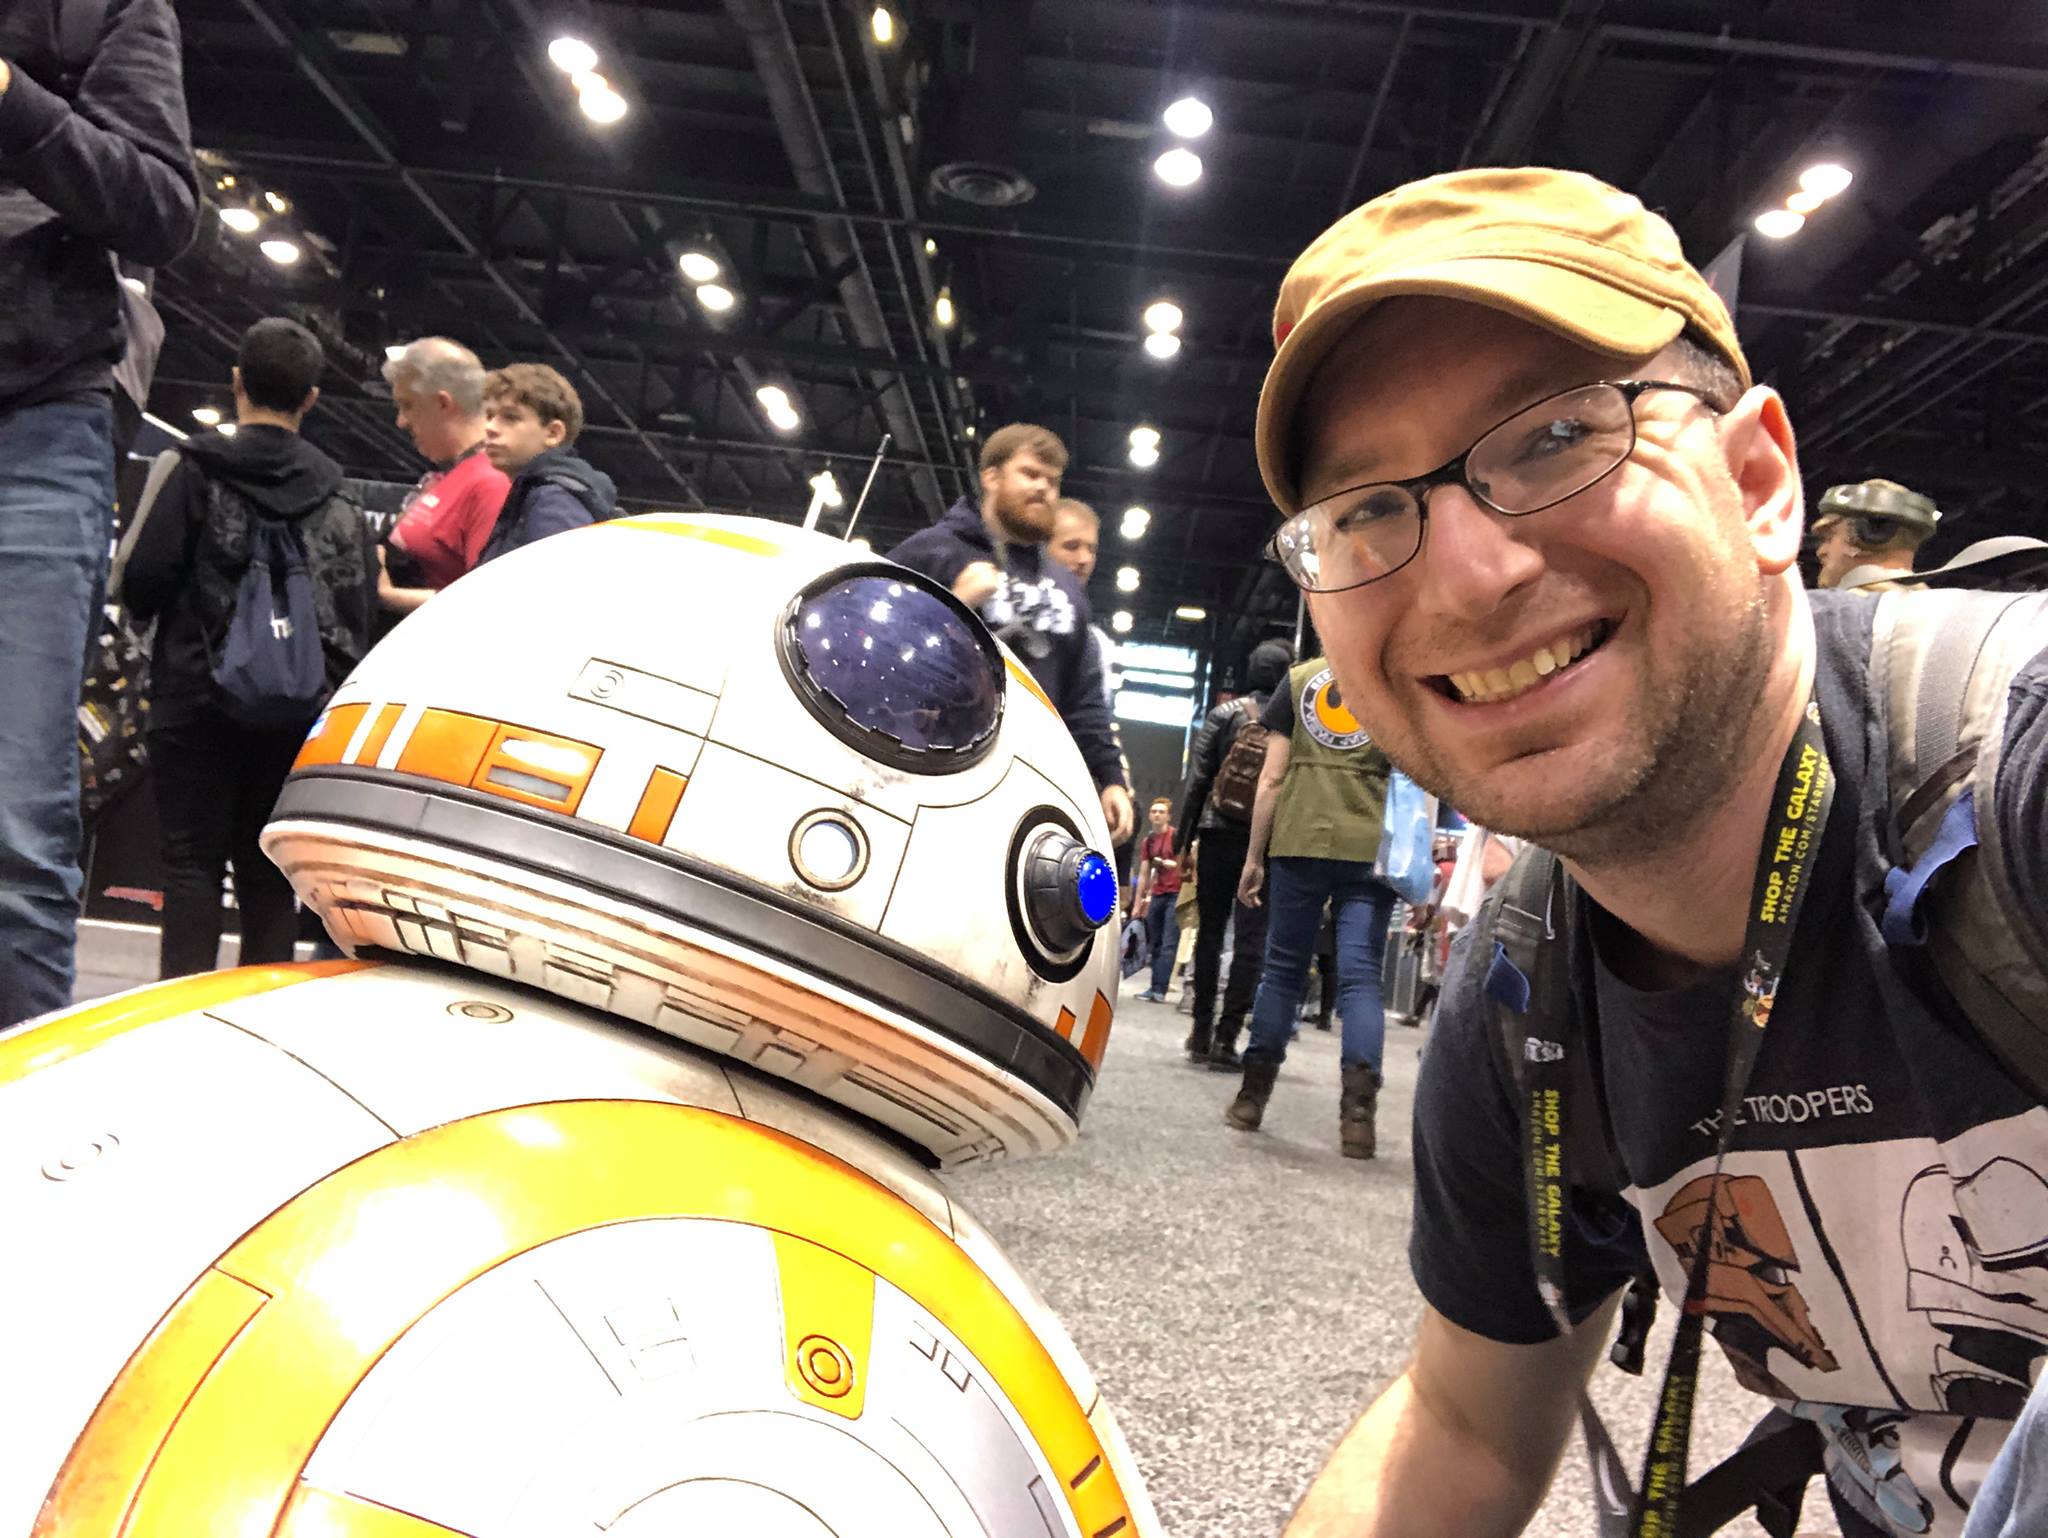 Andrew Liptak with BB-8